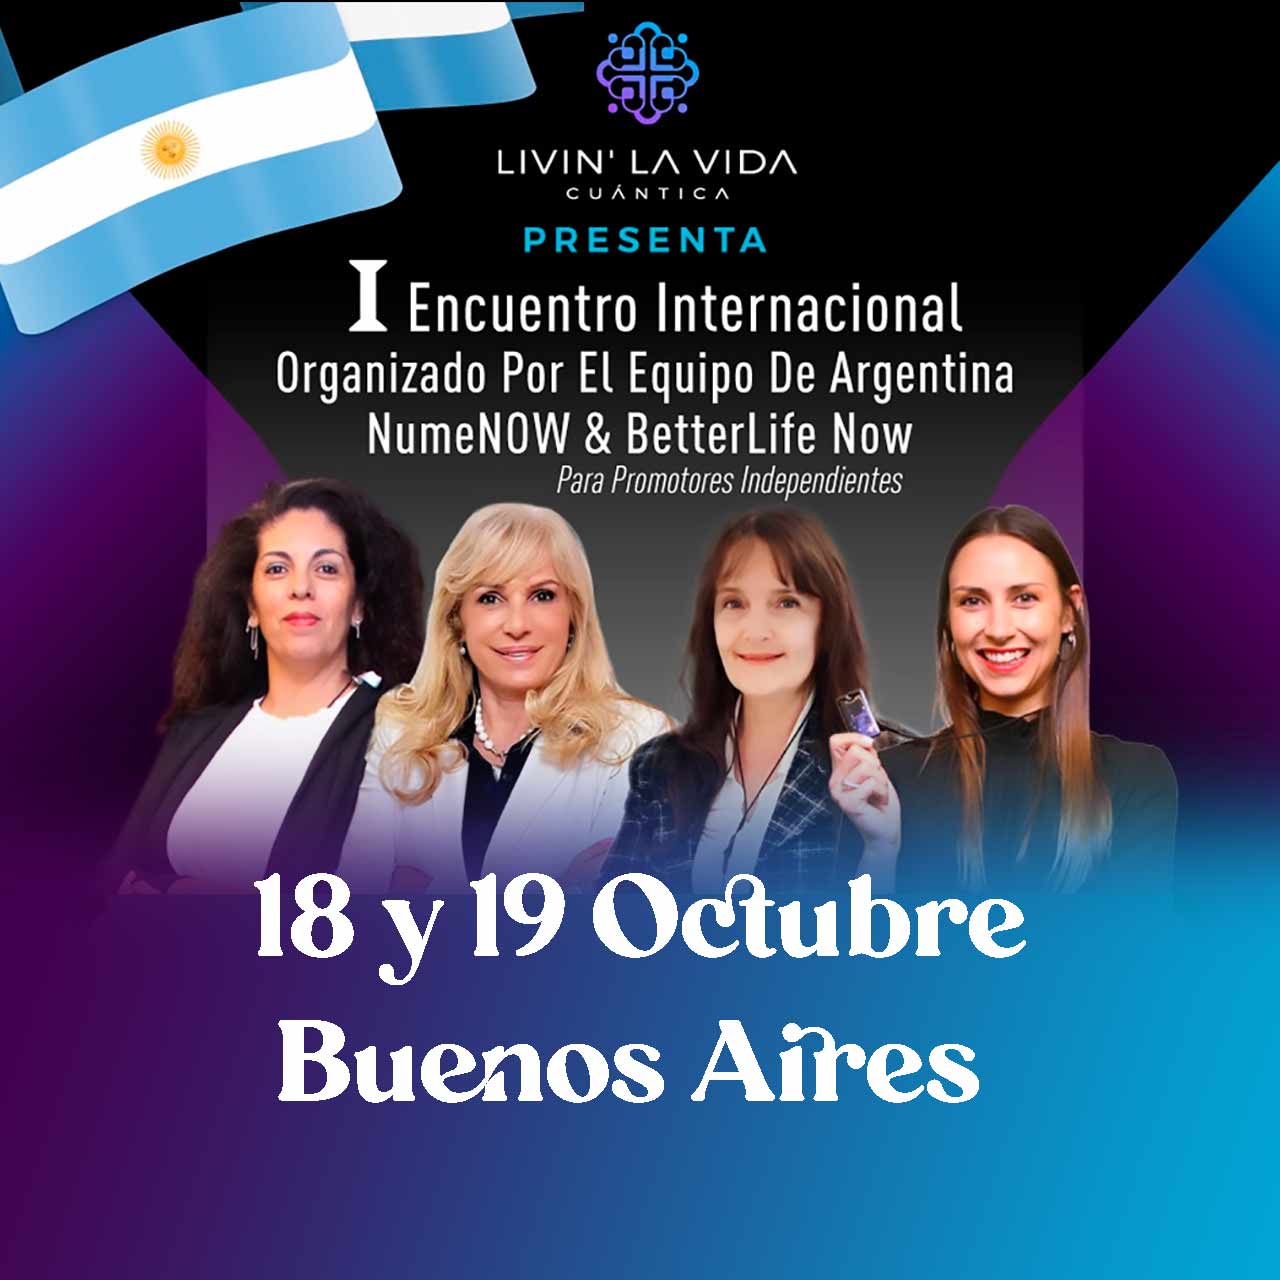 1º Encuentro Internacional organizado por el equipo de Argentina Nume Now & Better Life Now para Promotores Independientes